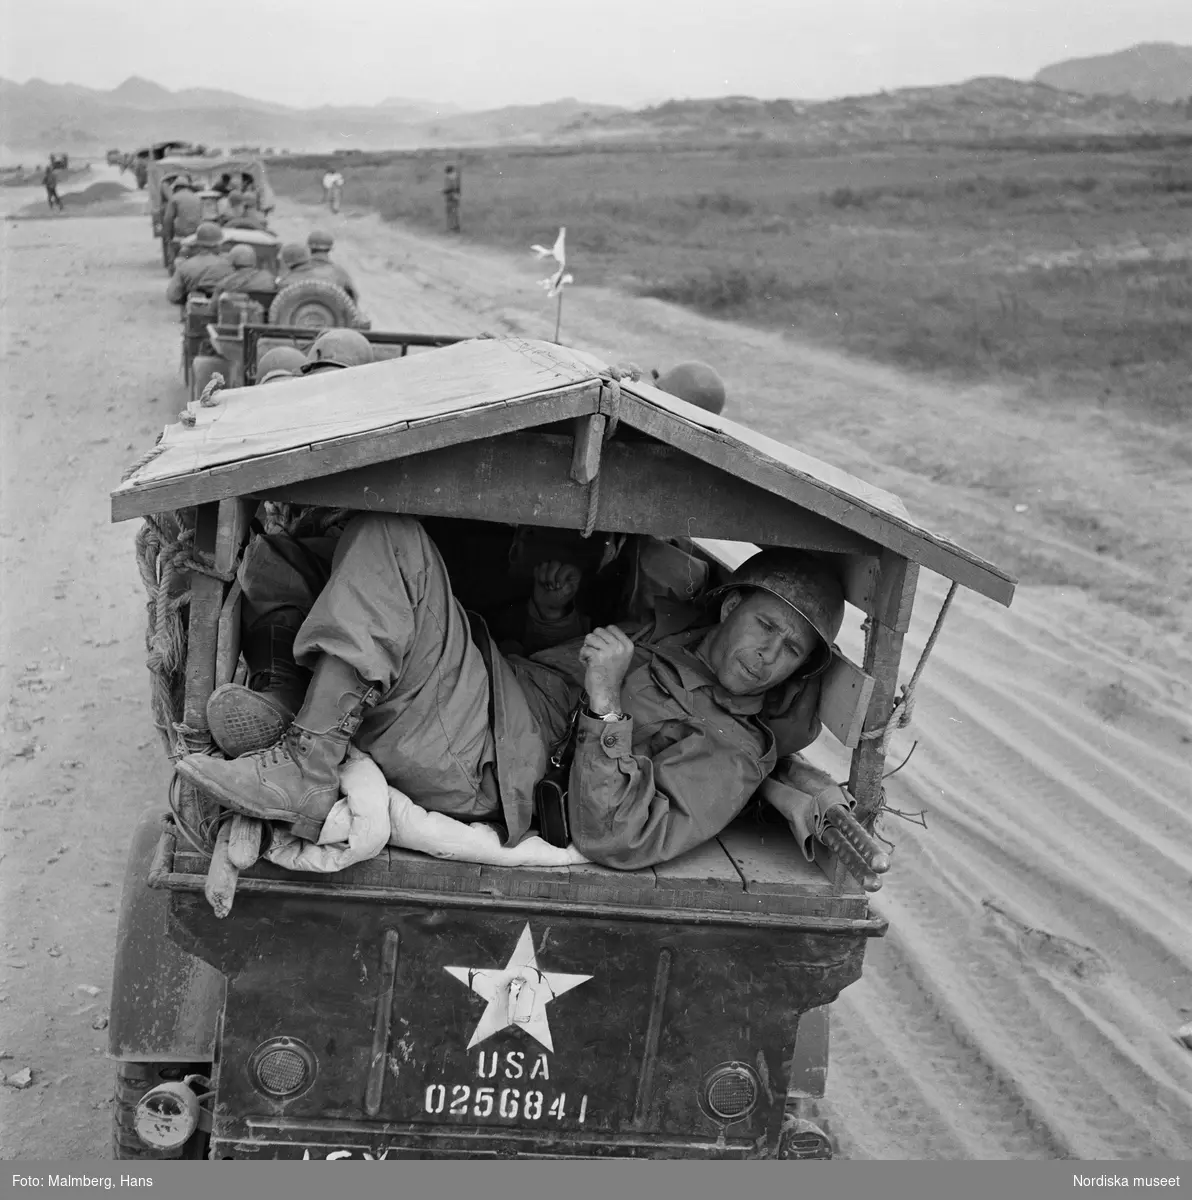 Koreakriget. En kolonn med amerikanska jeep-fordon på en väg. En amerikansk soldat ligger på en av bilarnas lastflak.